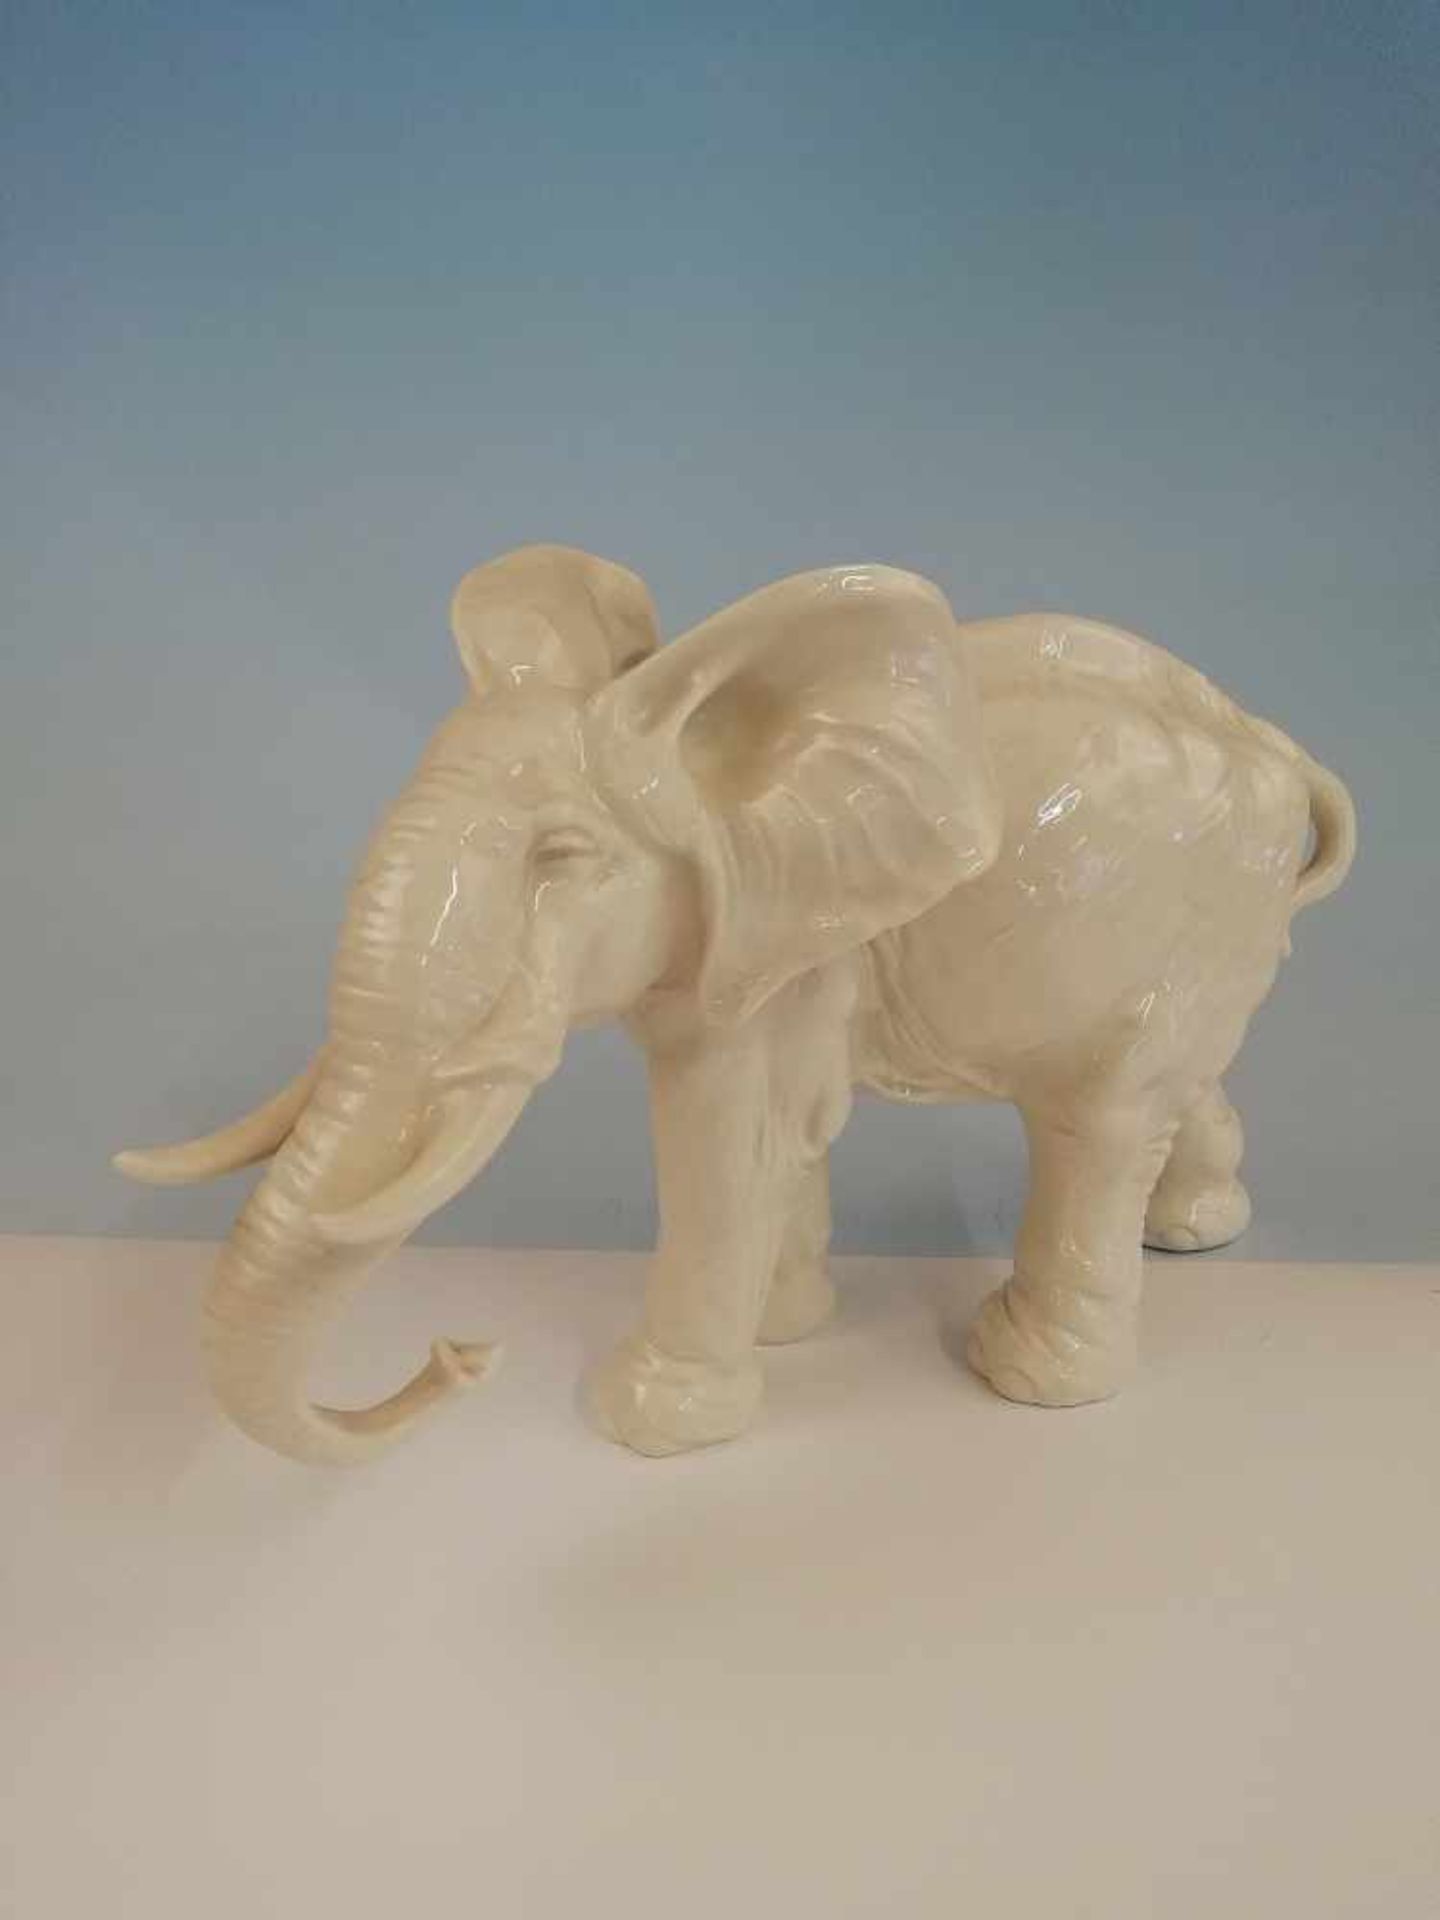 Tierfigur, Elefant Porzellan, weiß glasiert, Marke Hutschenreuther, Höhe 25 cm;